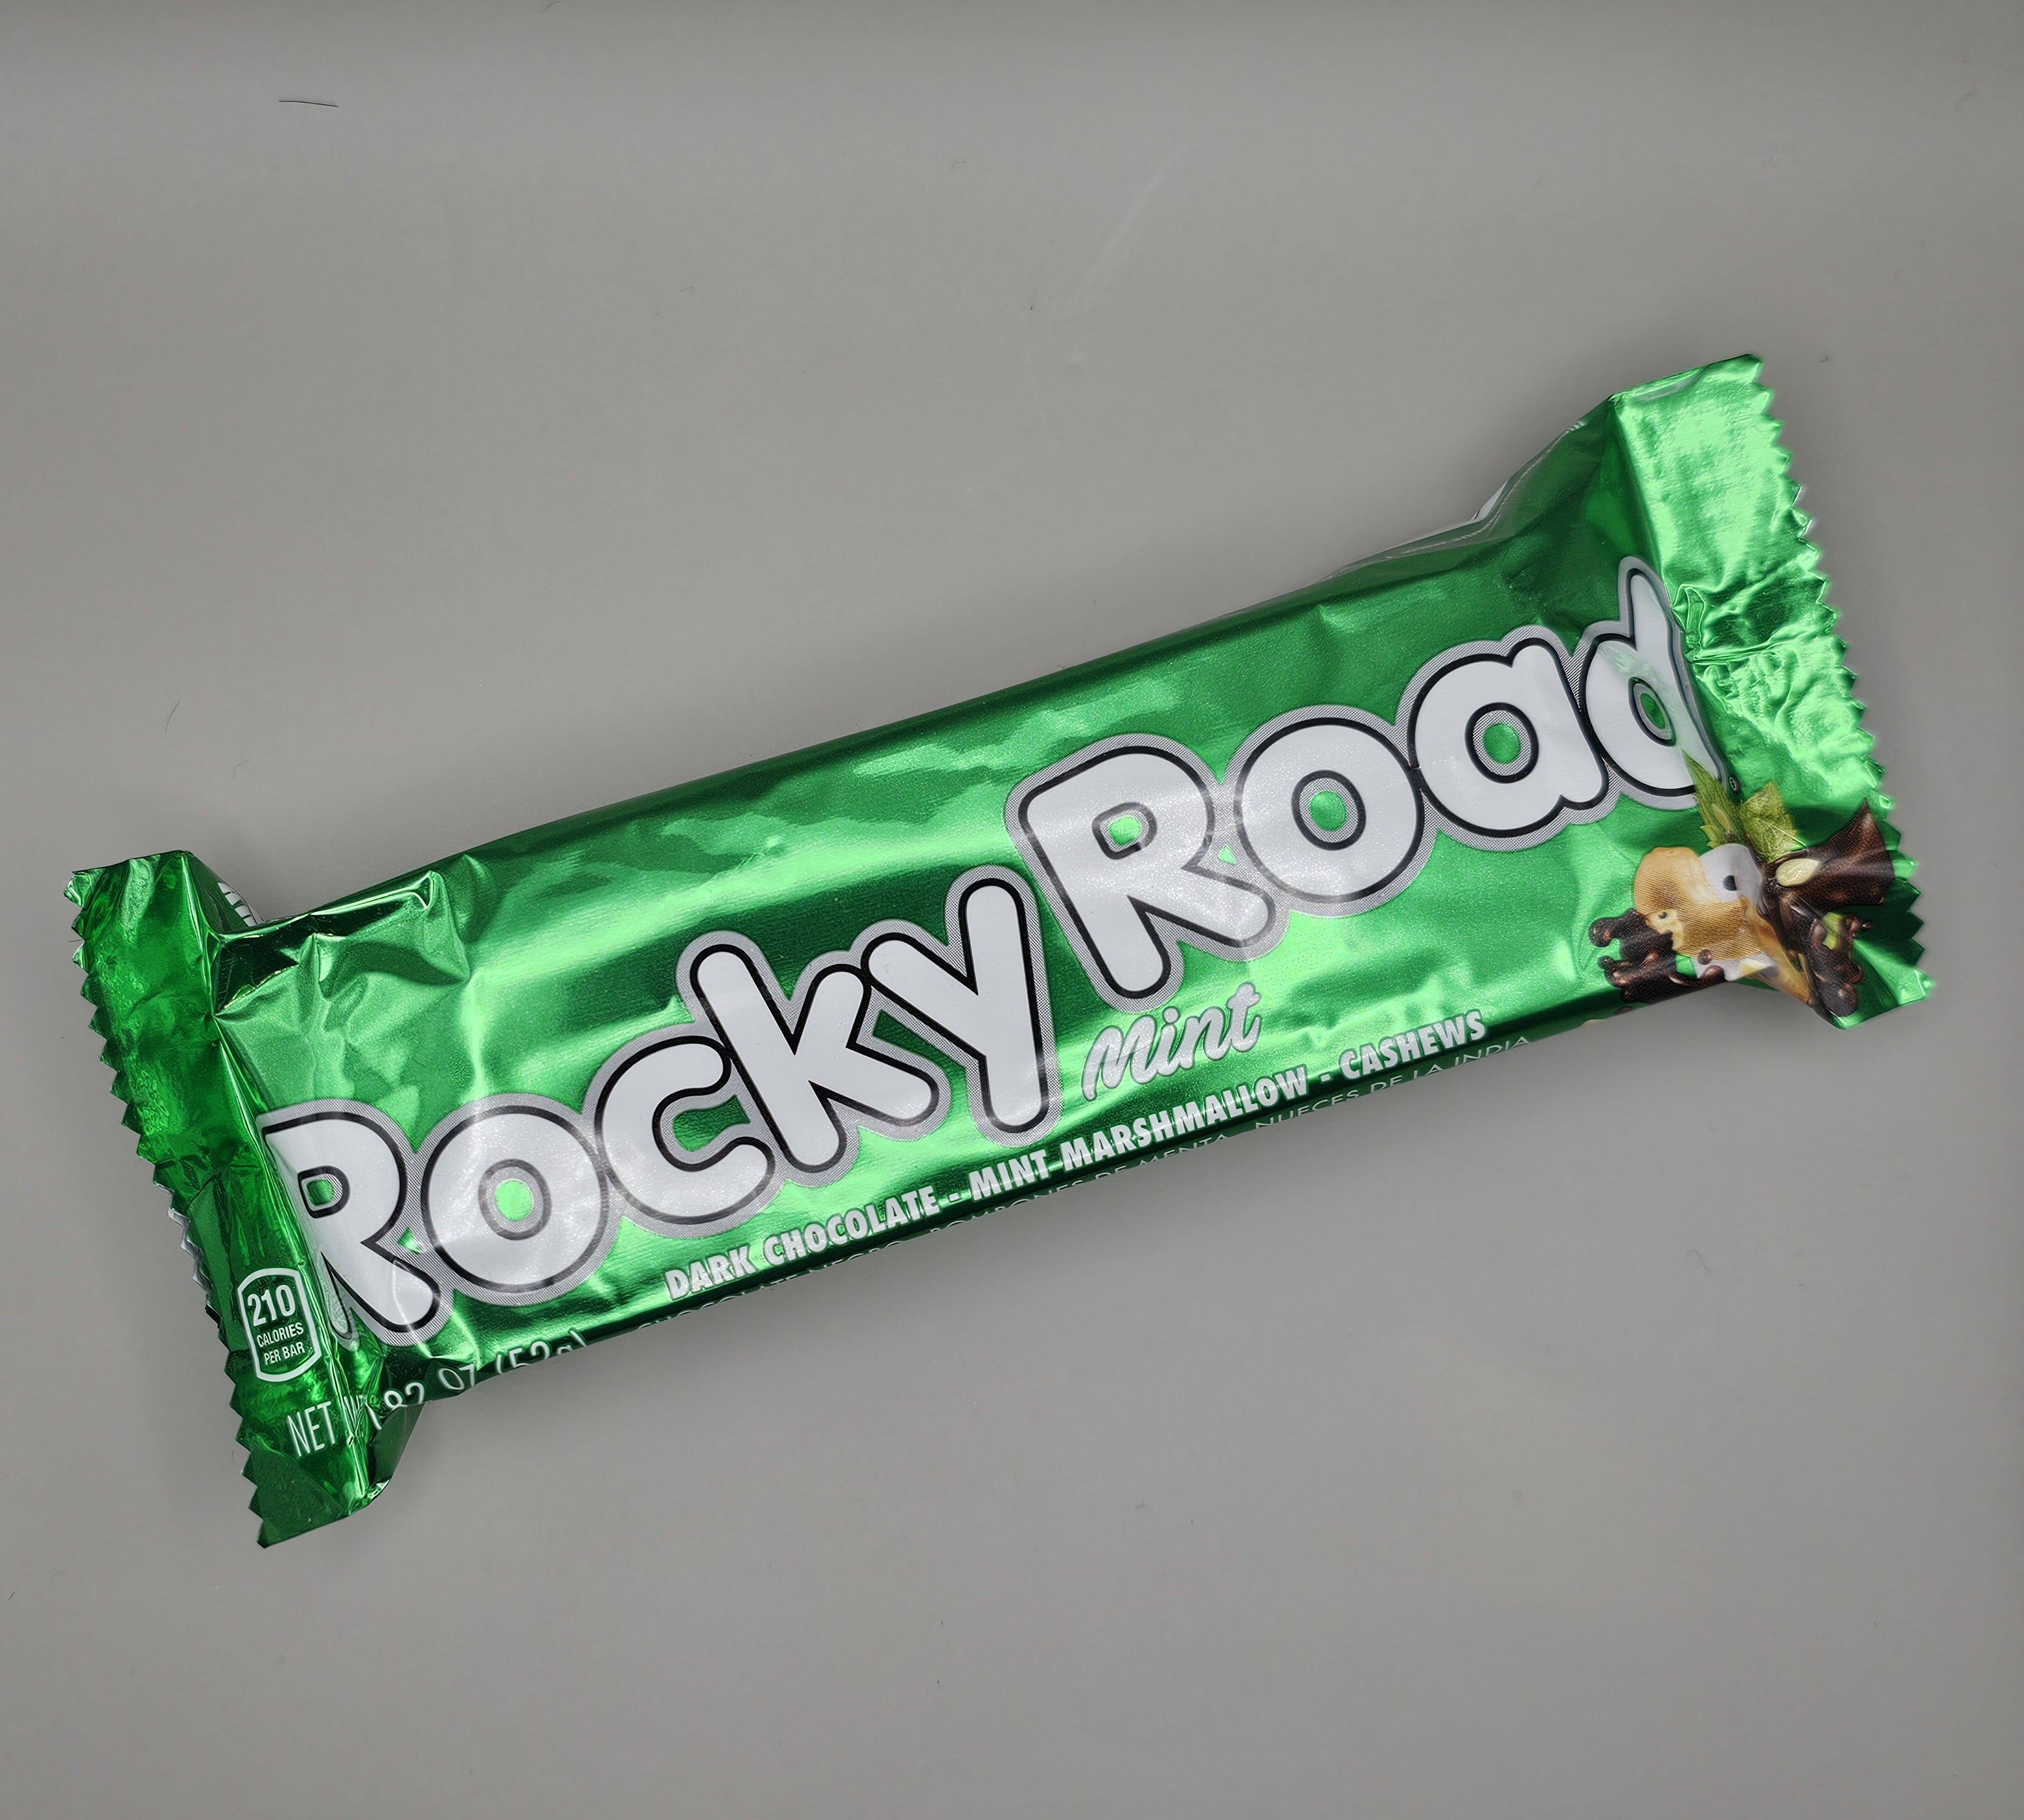 Rocky road mint